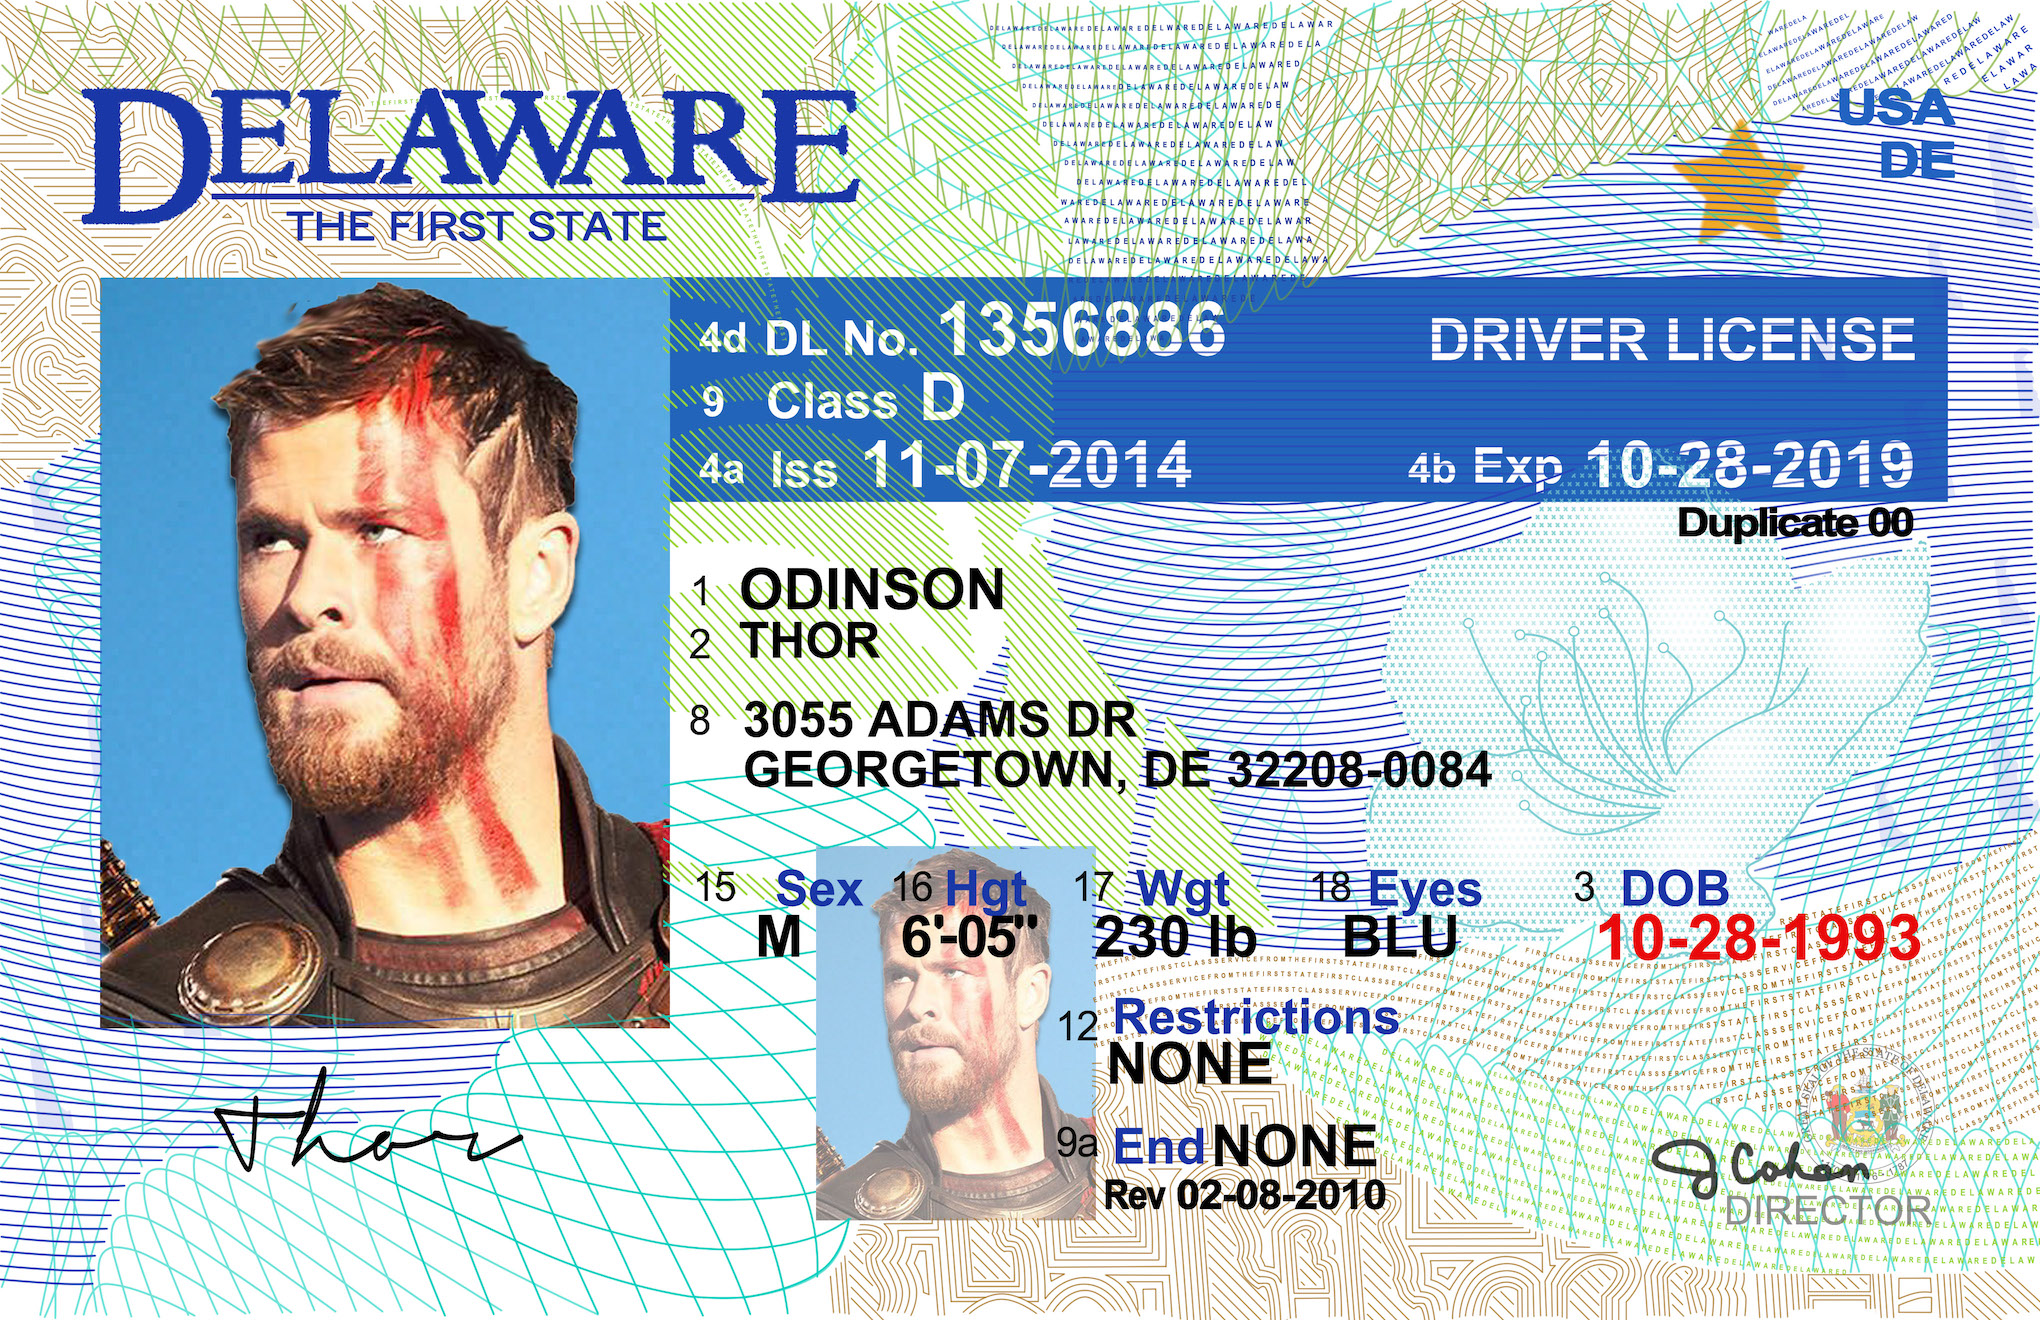 License ended. Delaware Driver License. Driver License USA Delaware. Class "в" Driver License.